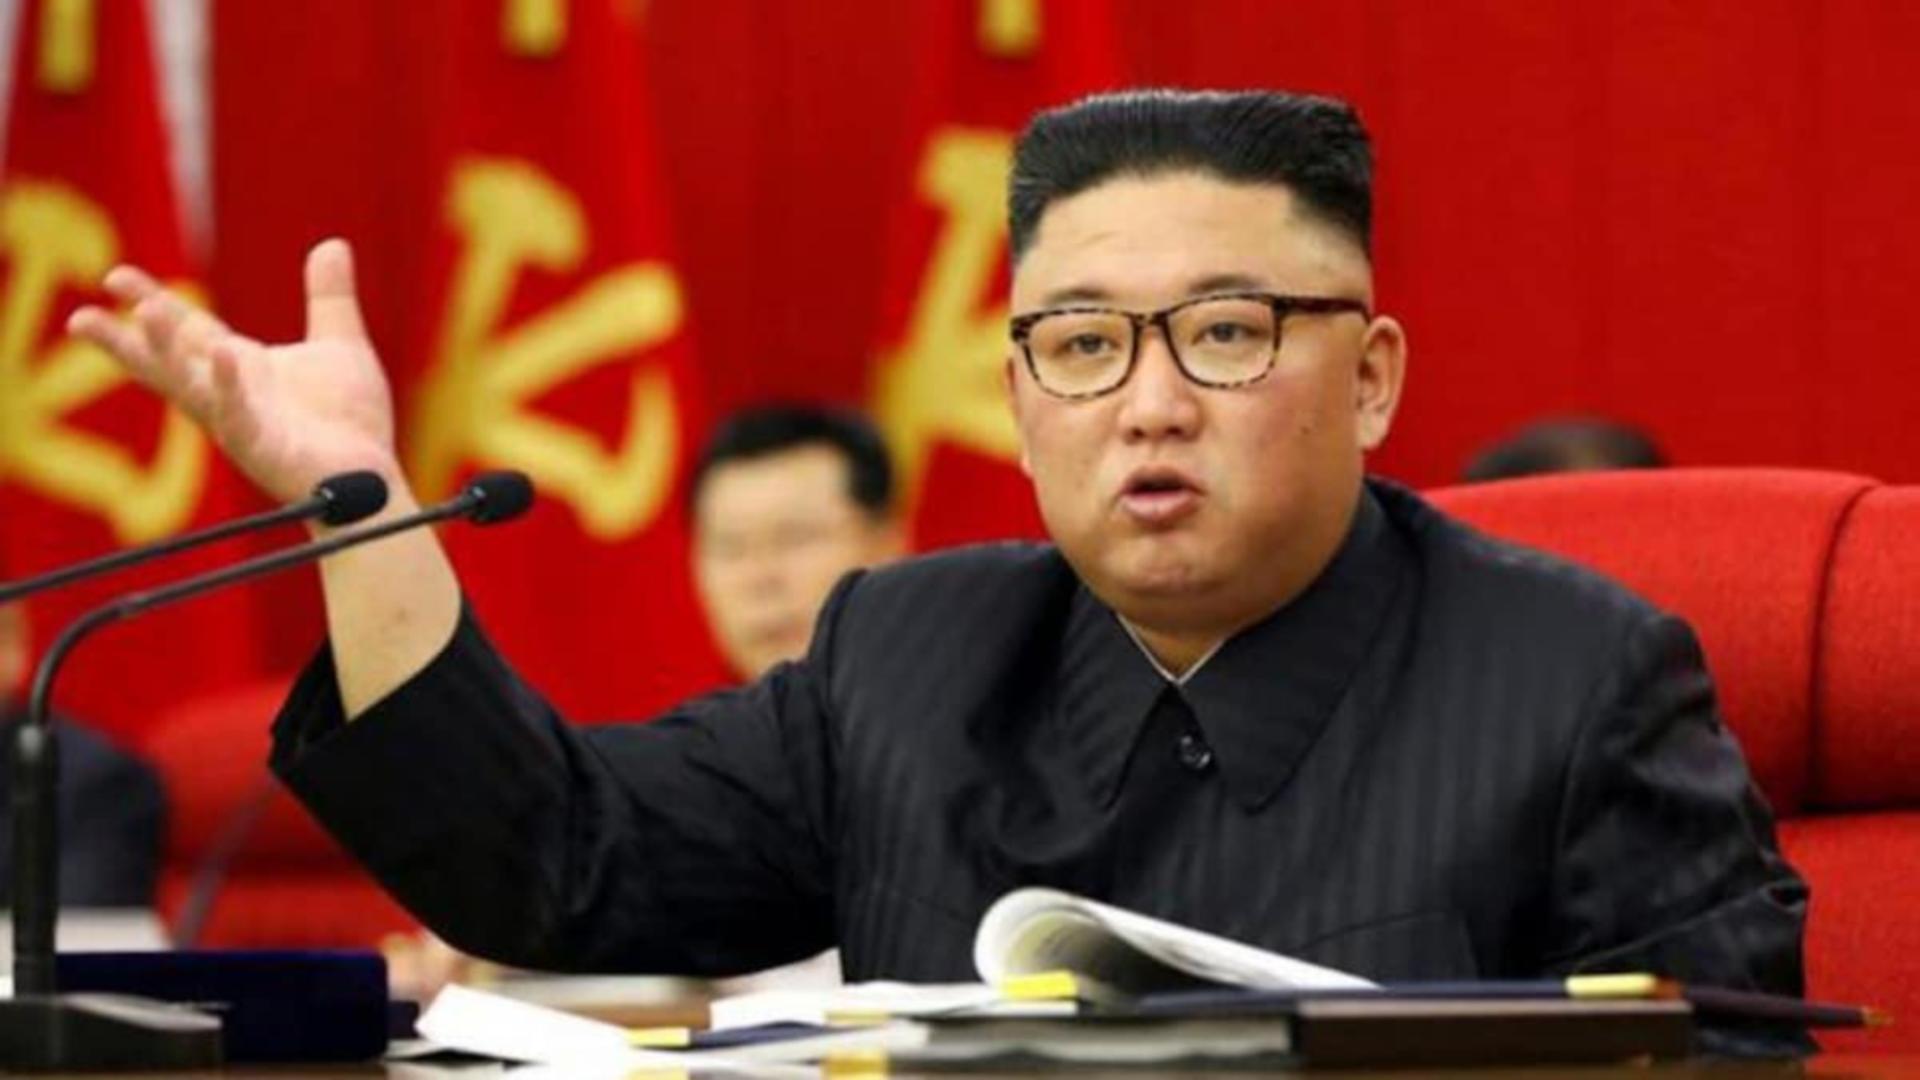 Cum arată fiul lui Kim Jong Un și de ce îi este frică dicatatorului nord coreean să-l scoată în public